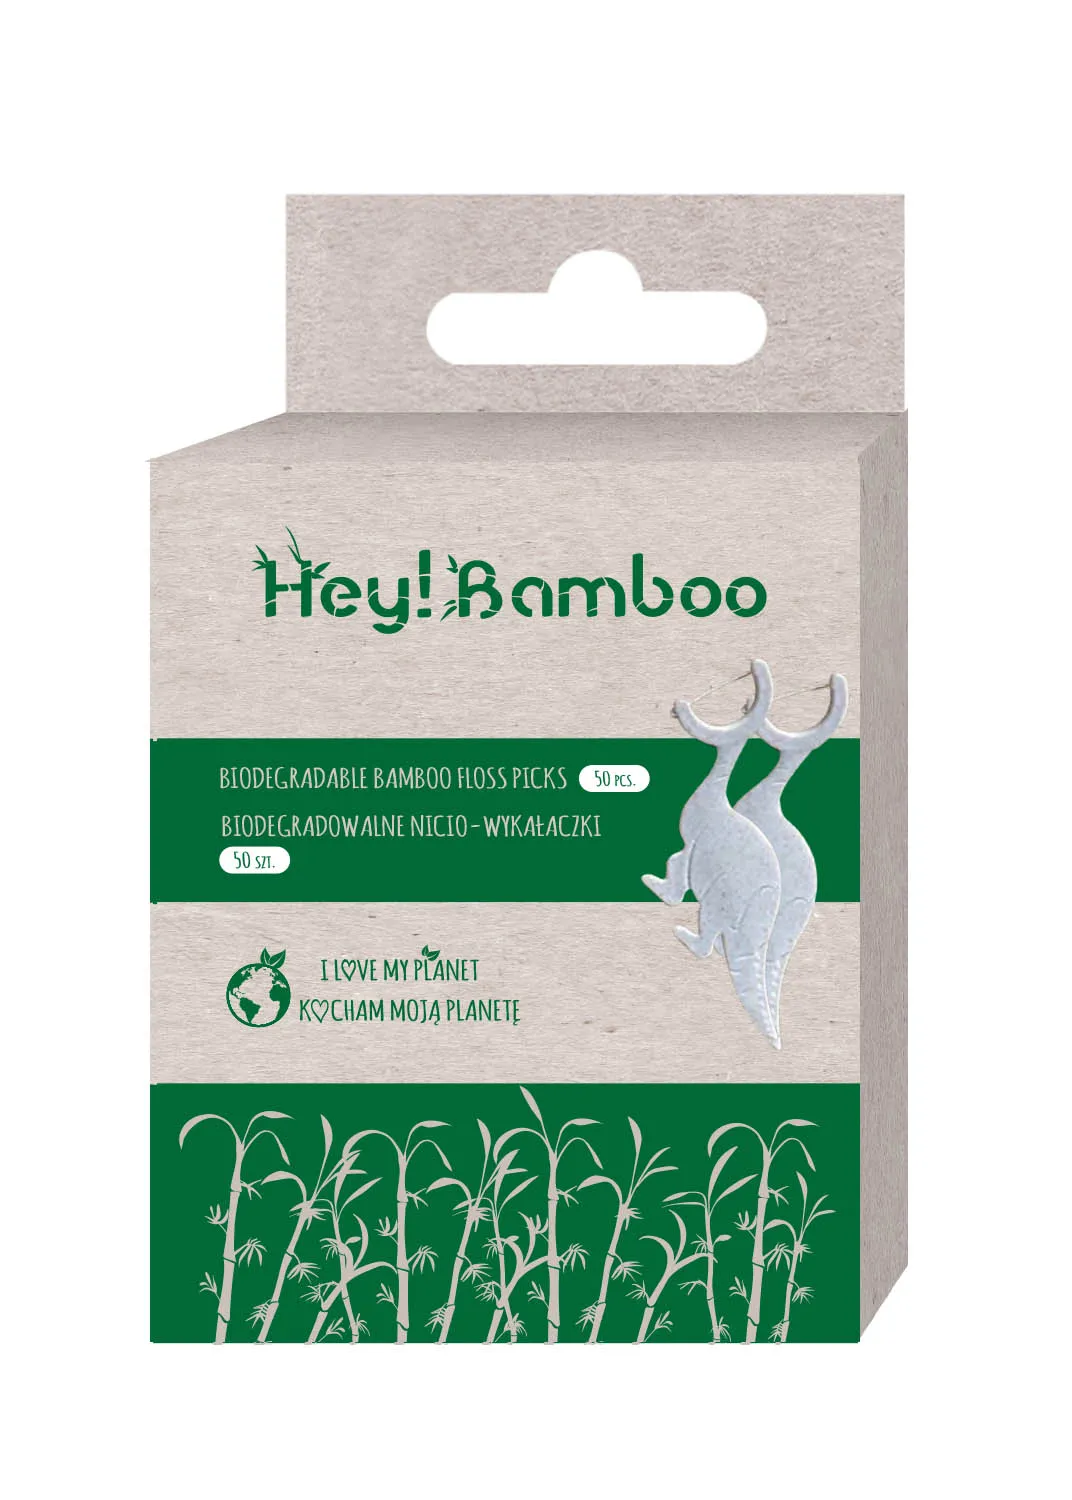 Hey! Bamboo biodegradowalne bambusowe patyczki do uszu, 200 szt.